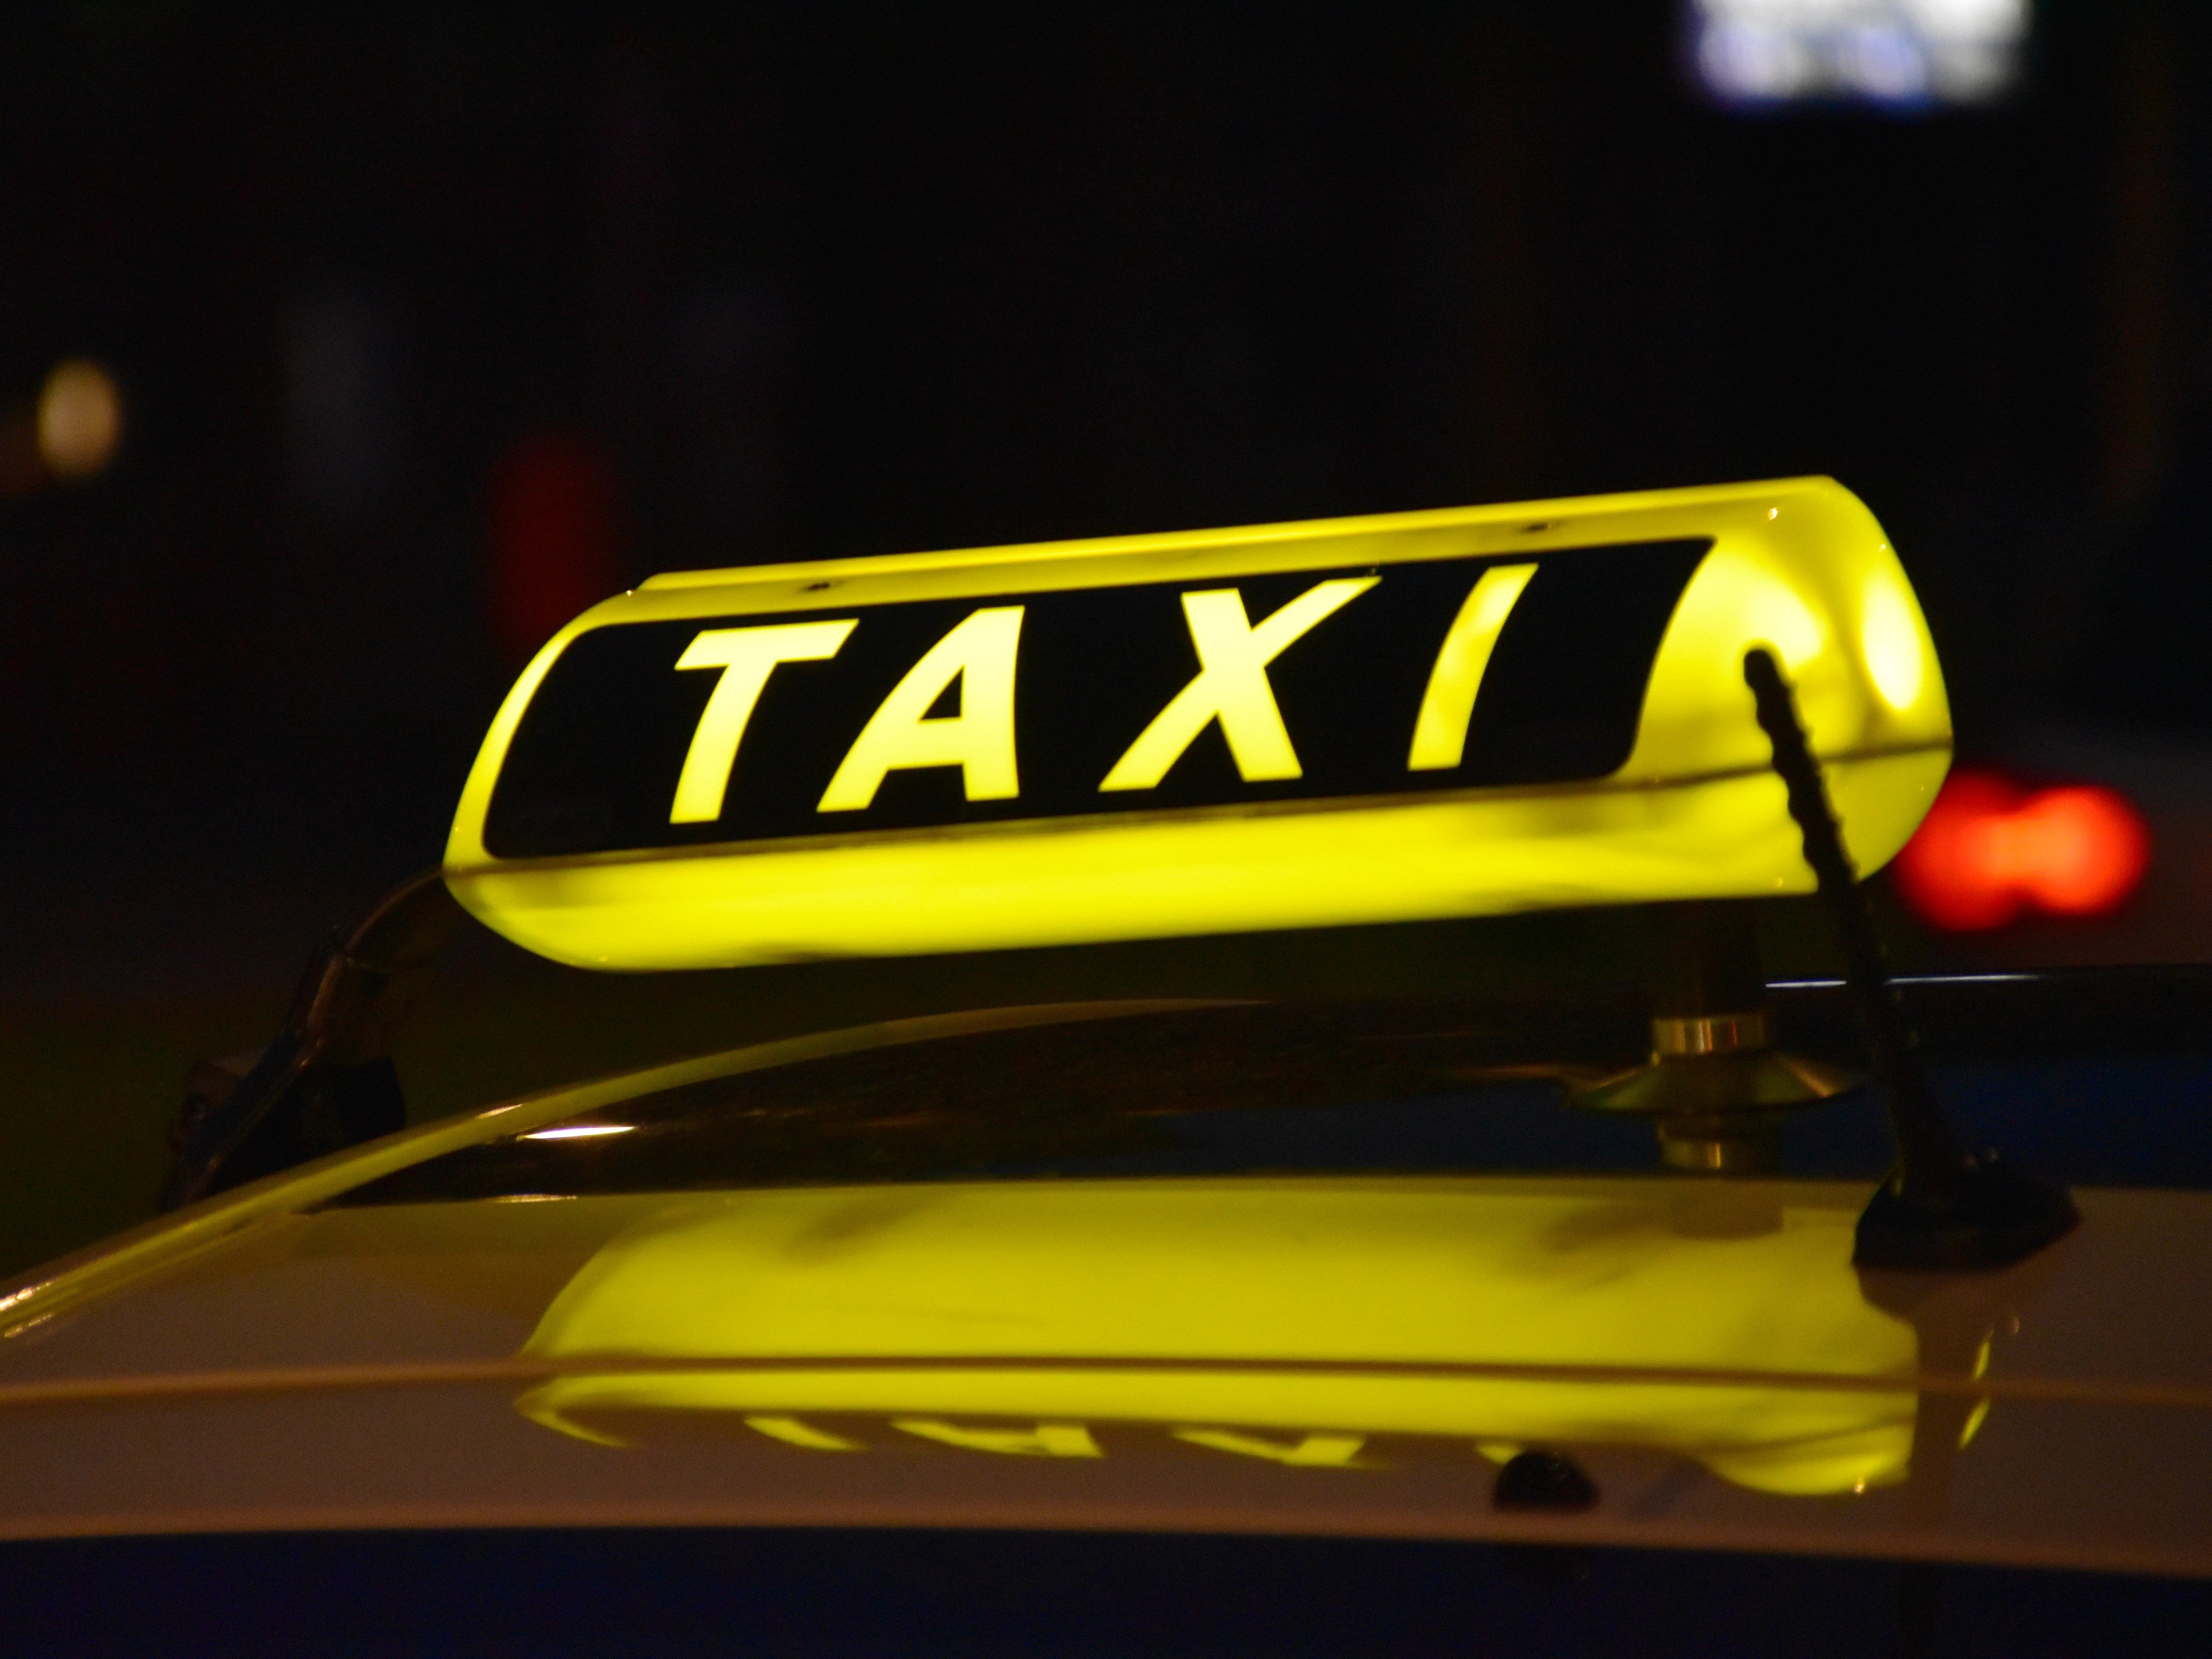 #Taxi: Hat die Abzocke ein Ende?